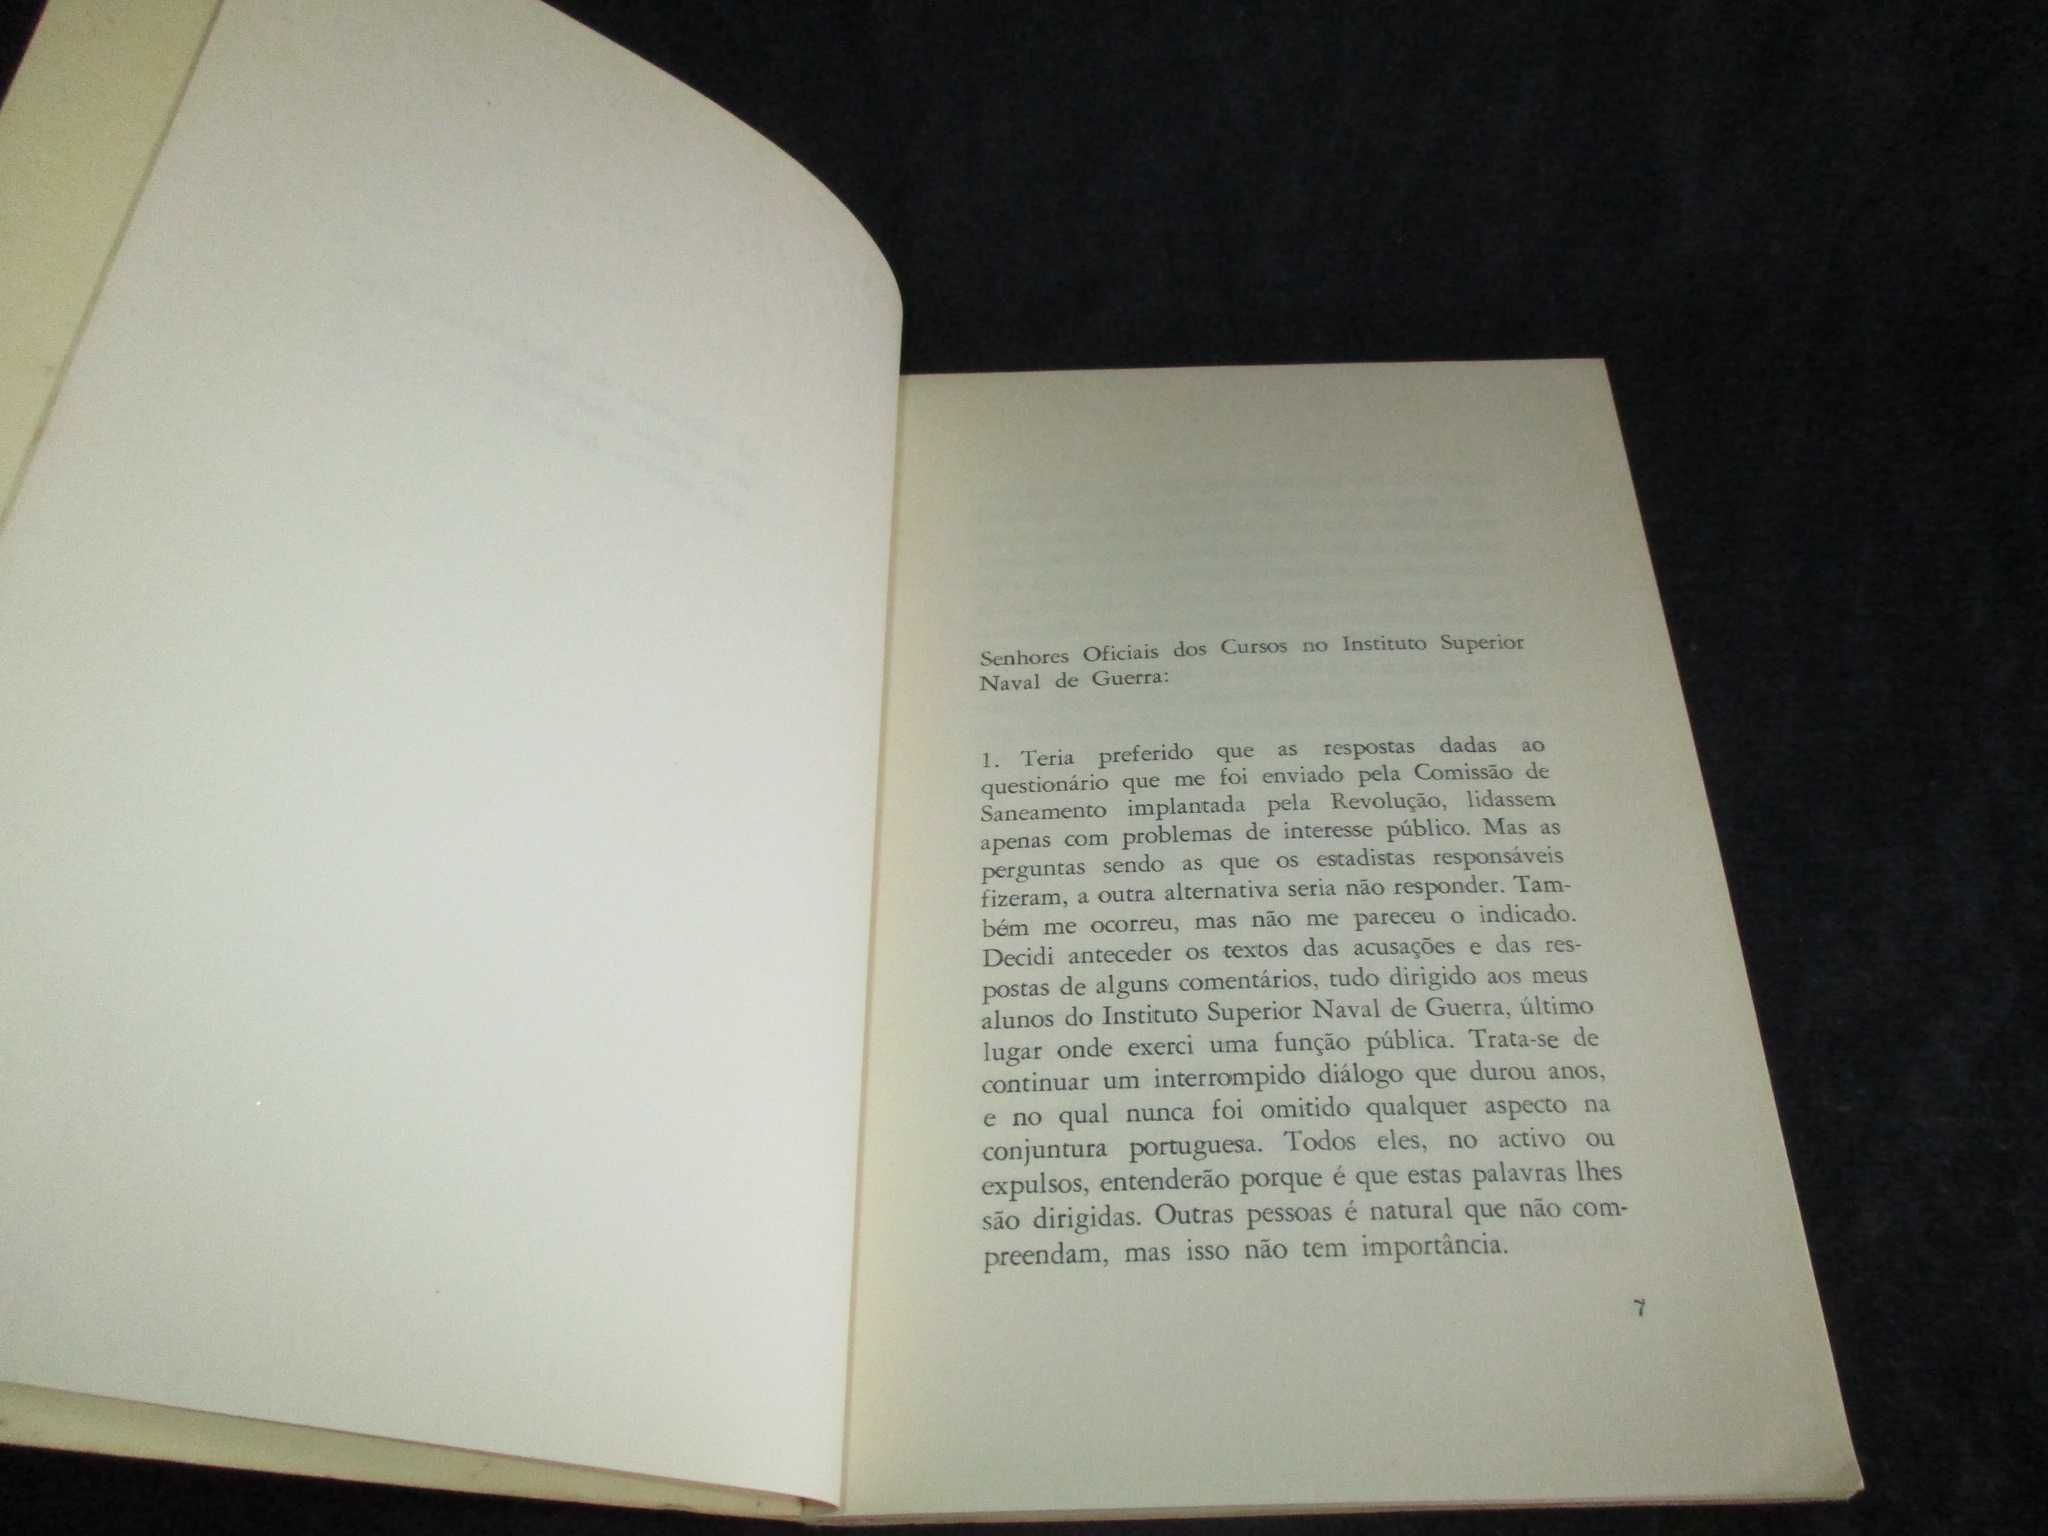 Livro Saneamento Nacional Adriano Moreira 1976